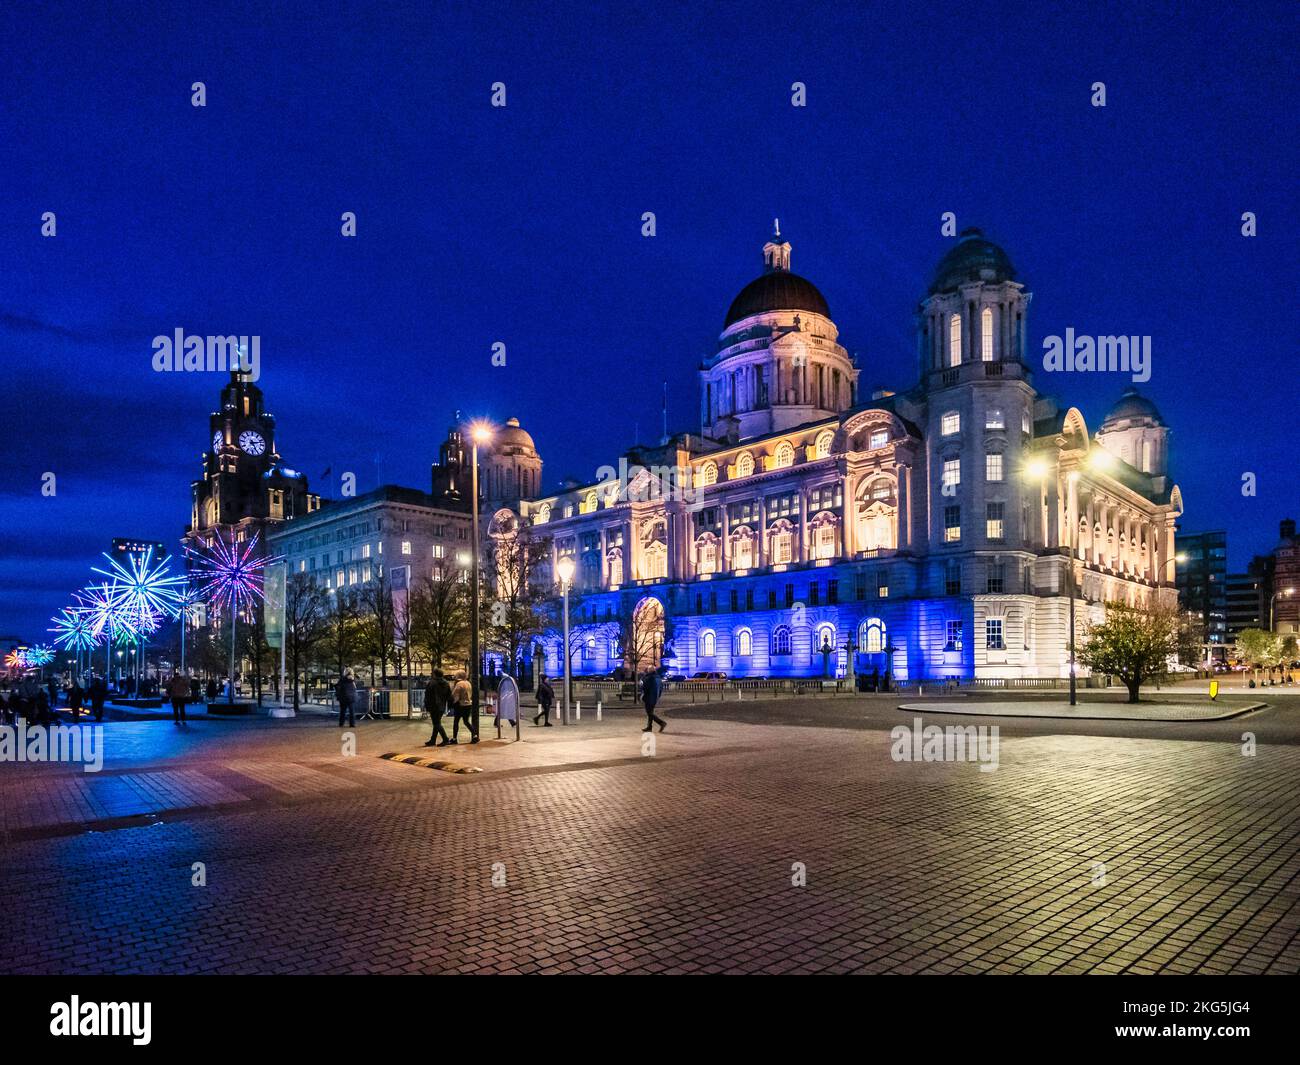 Scènes de rue de nuit à Liverpool de Pier Head en regardant vers les trois graces du foie, Cunard Shipping, et le port de Liverpool bâtiment Banque D'Images